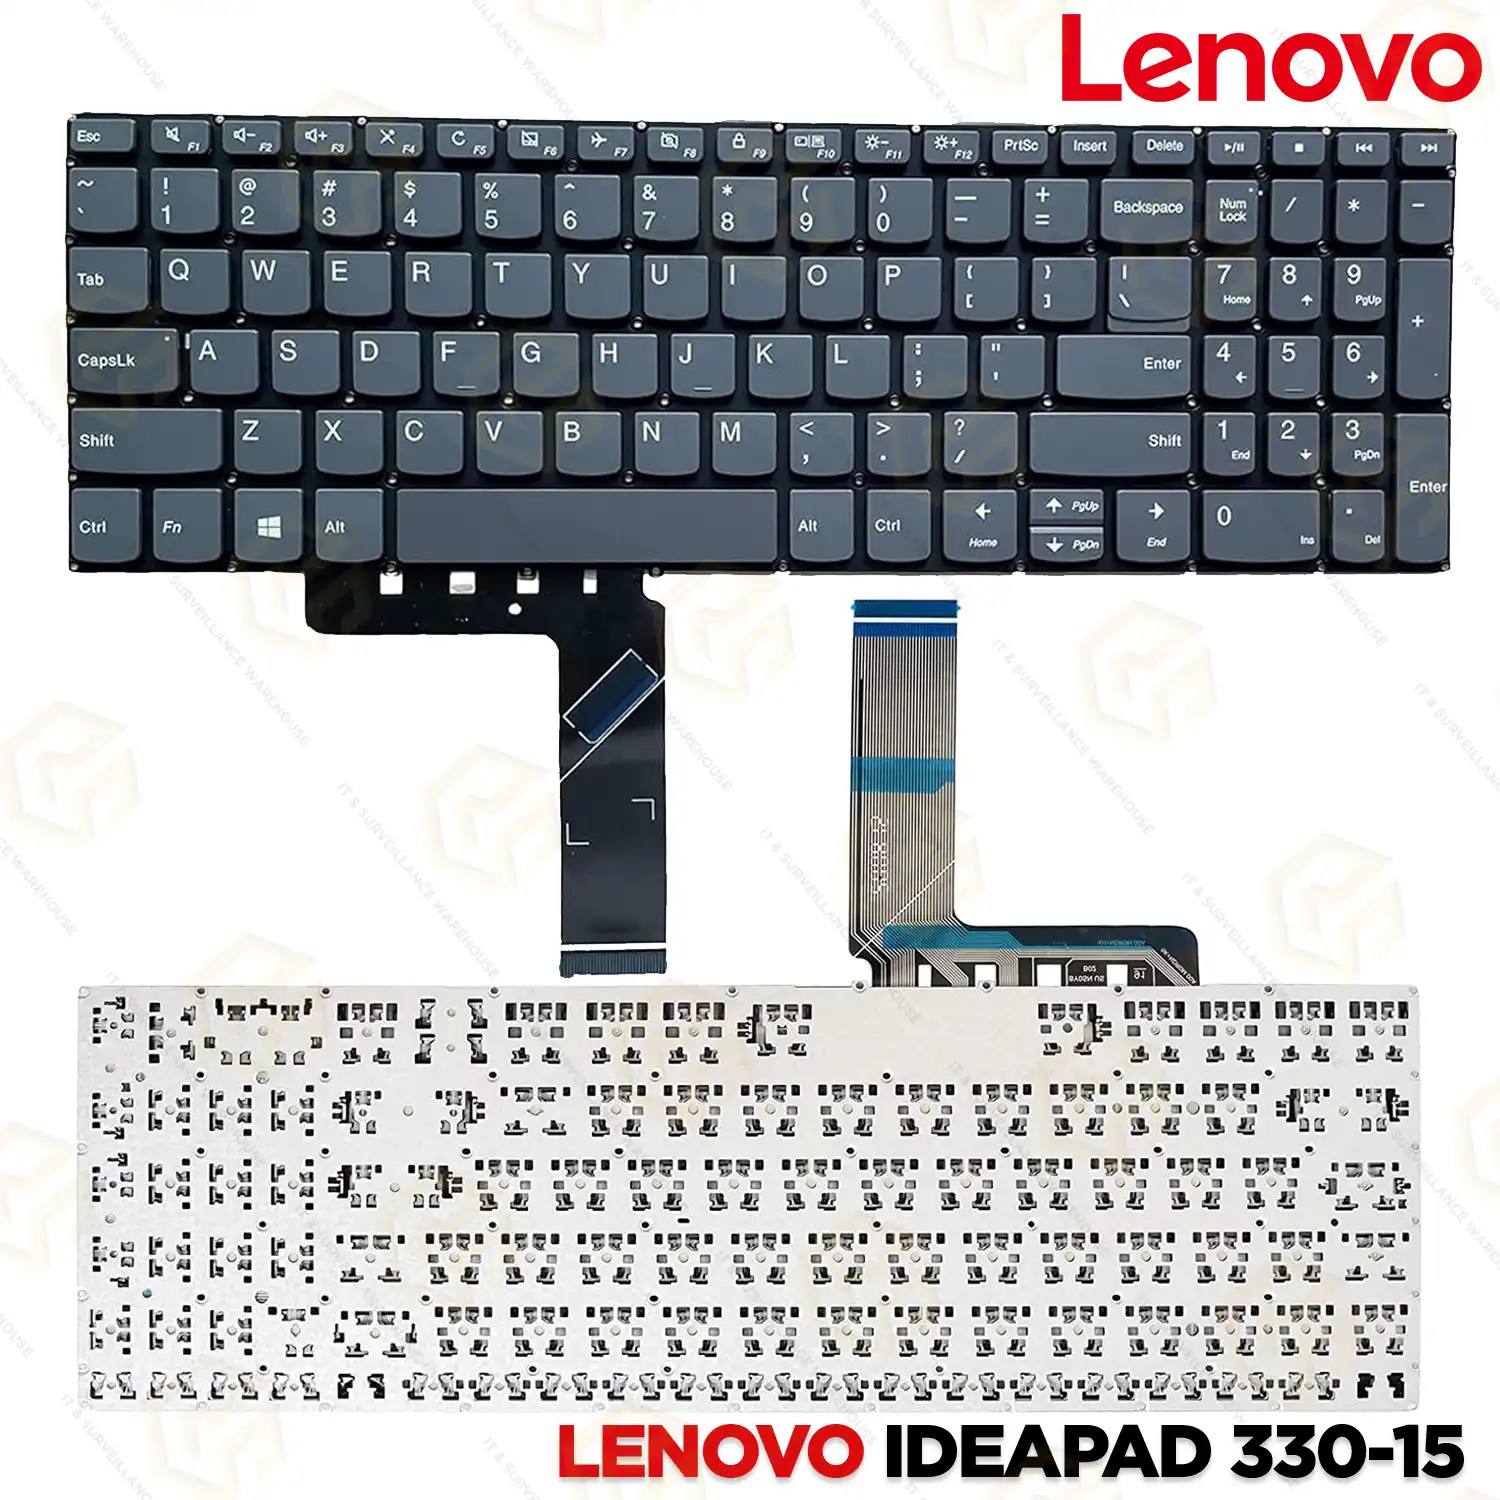 KEYBOARD LENOVO IDEAPAD 330-15 |340-15|S340|V330